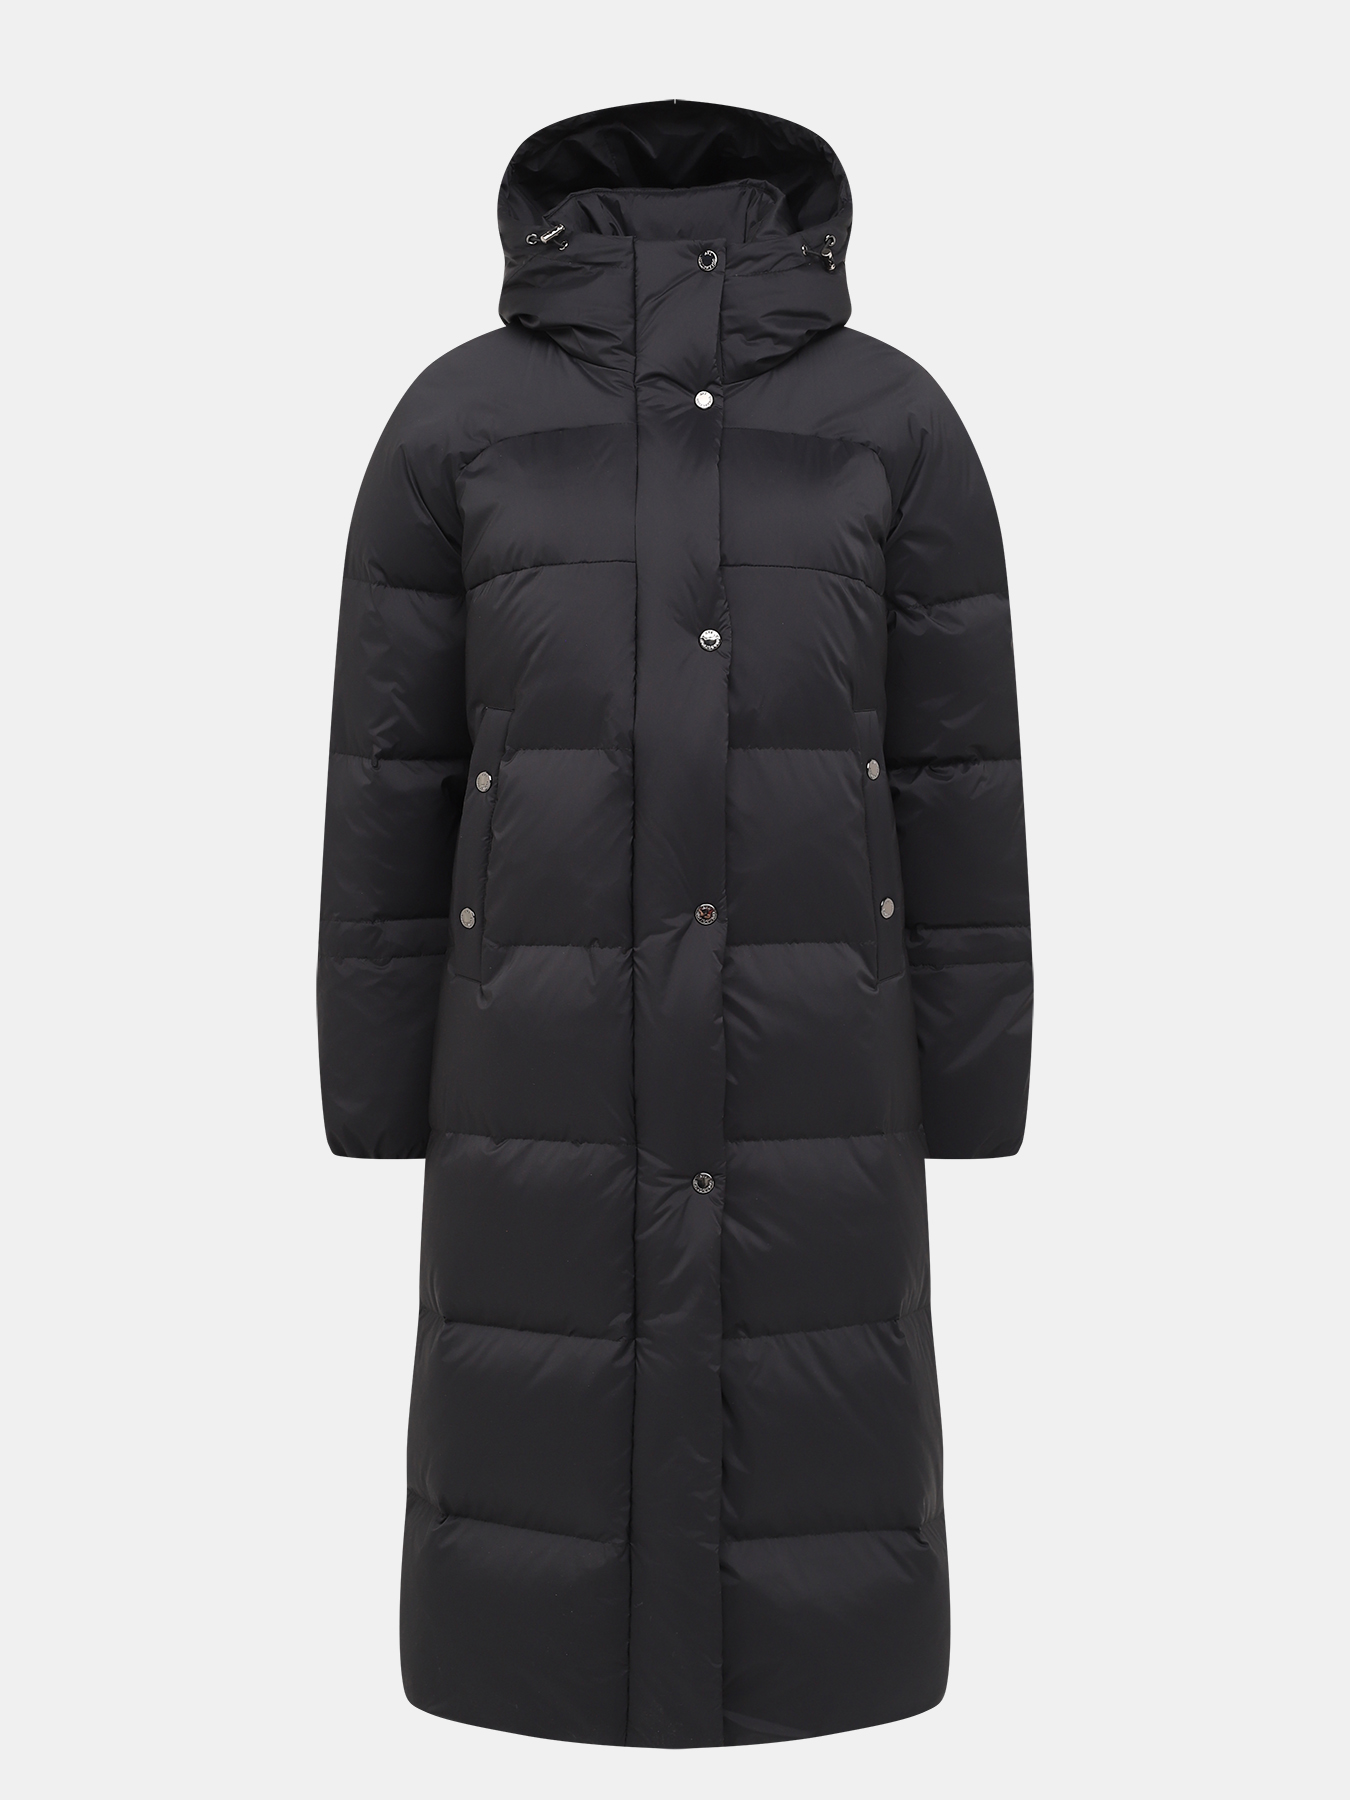 Пальто зимнее AVI 433511-018, цвет темно-серый, размер 36 - фото 1